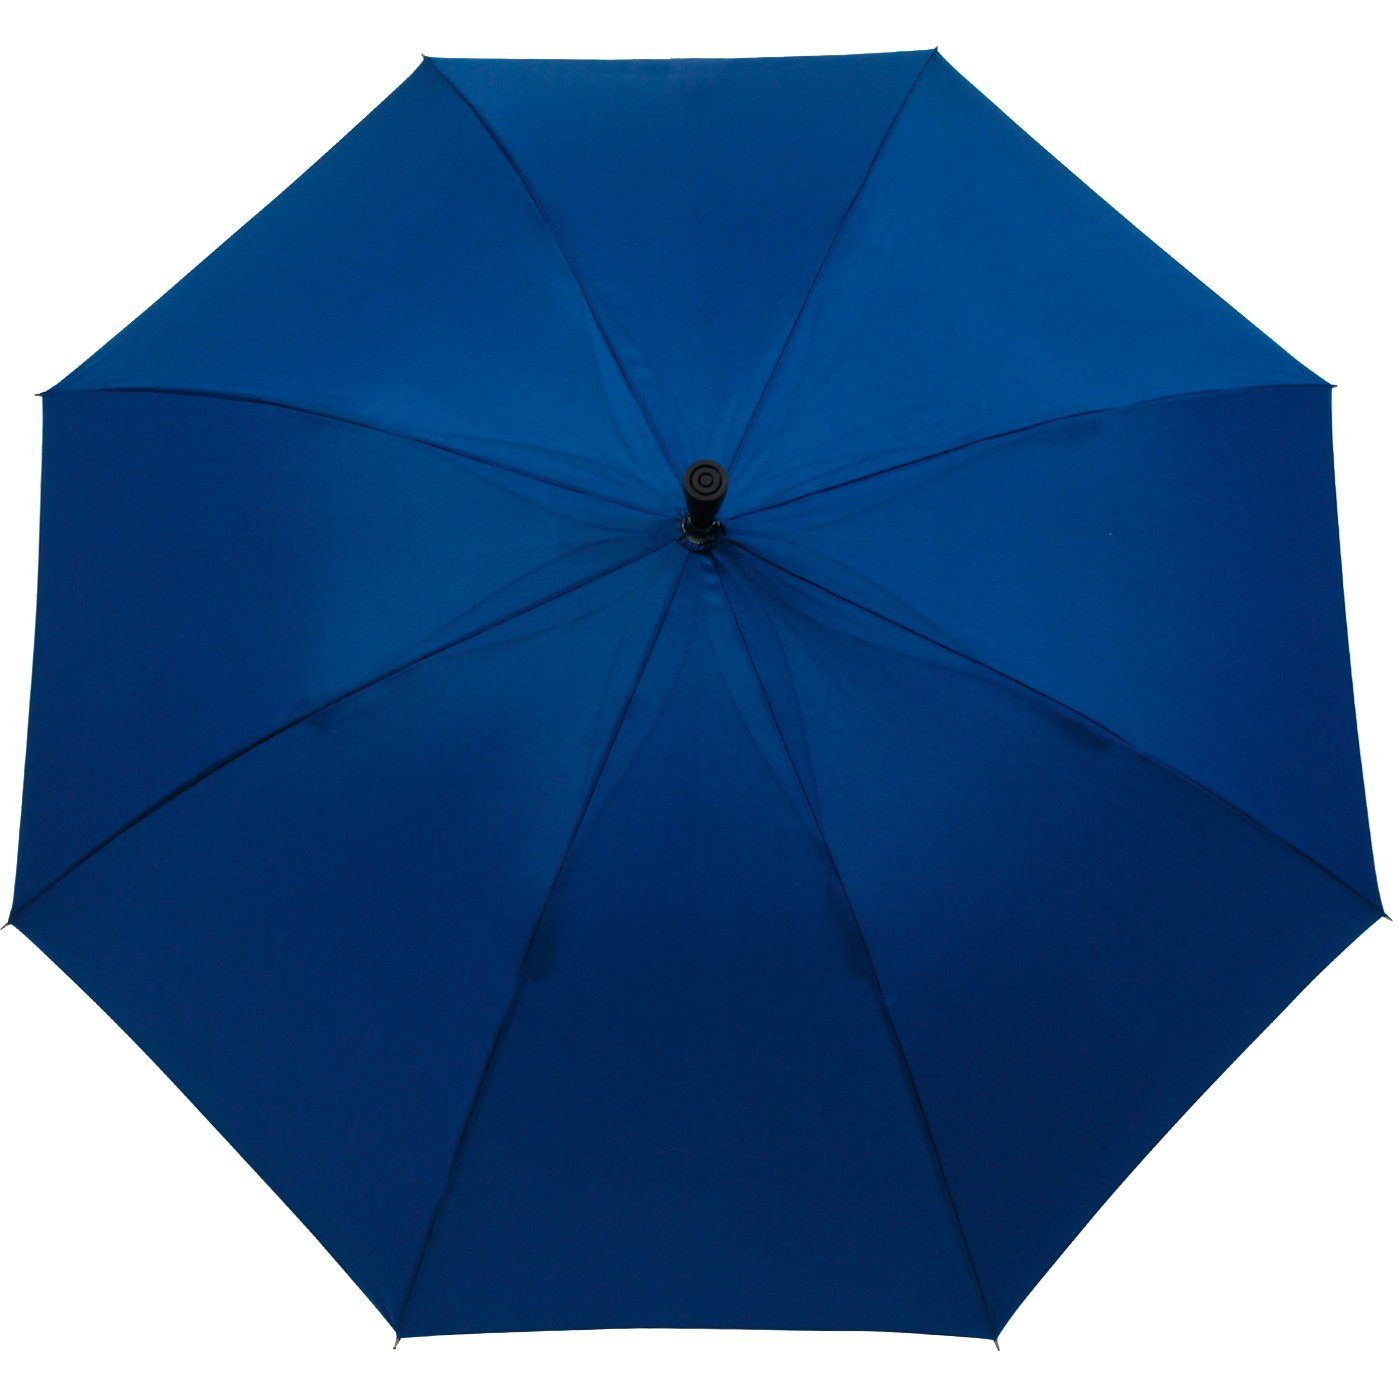 stabil, Langregenschirm extrem-stabil Stützschirm iX-brella sehr blau Holzgriff höhenverstellbar